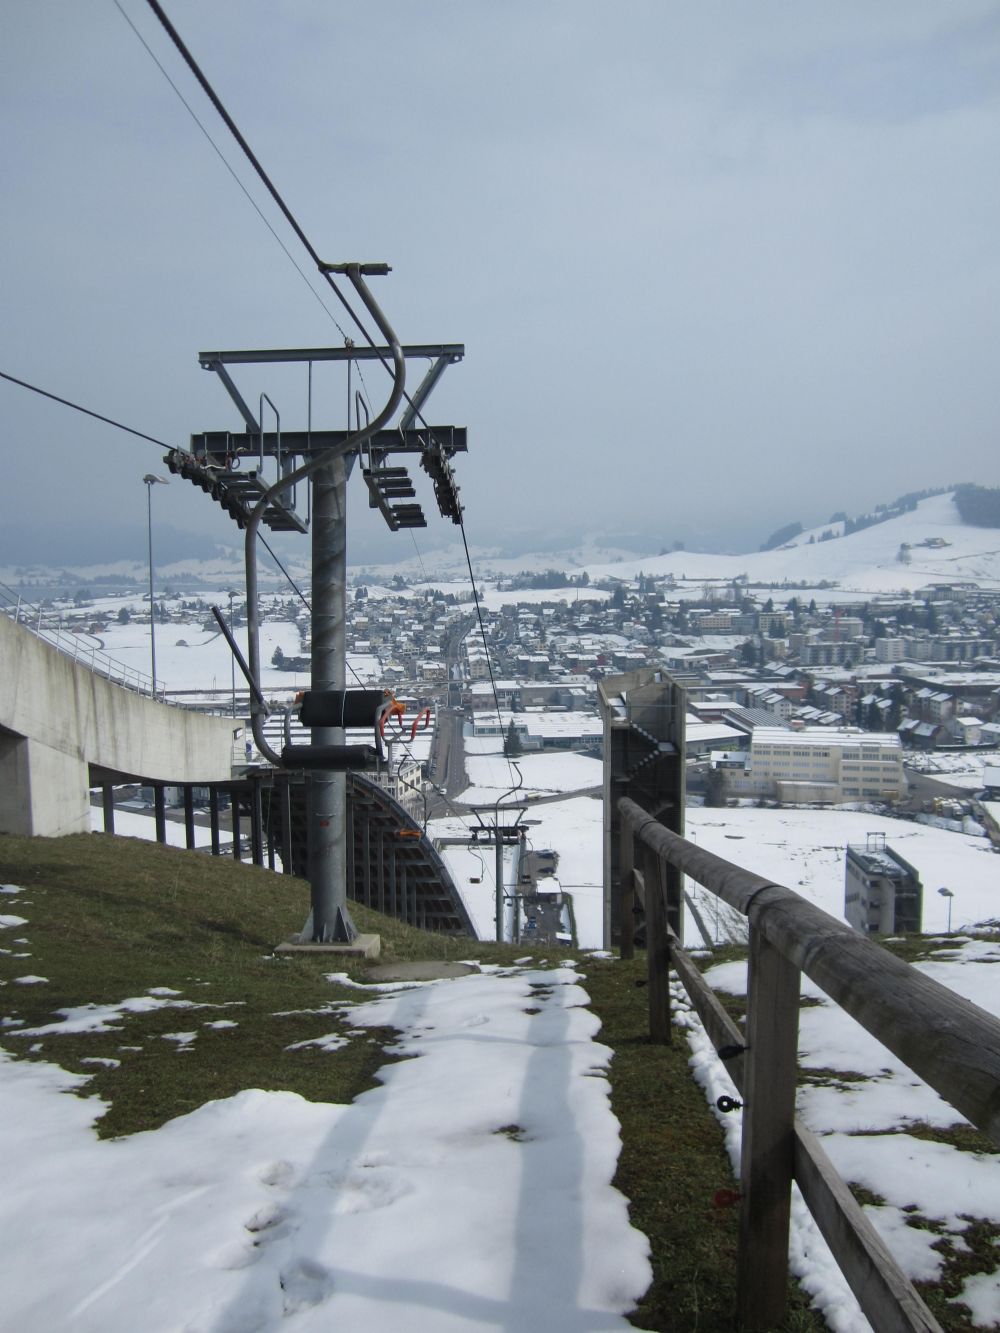 Besuch der Schanze in Einsiedeln: vom 26. März 2014